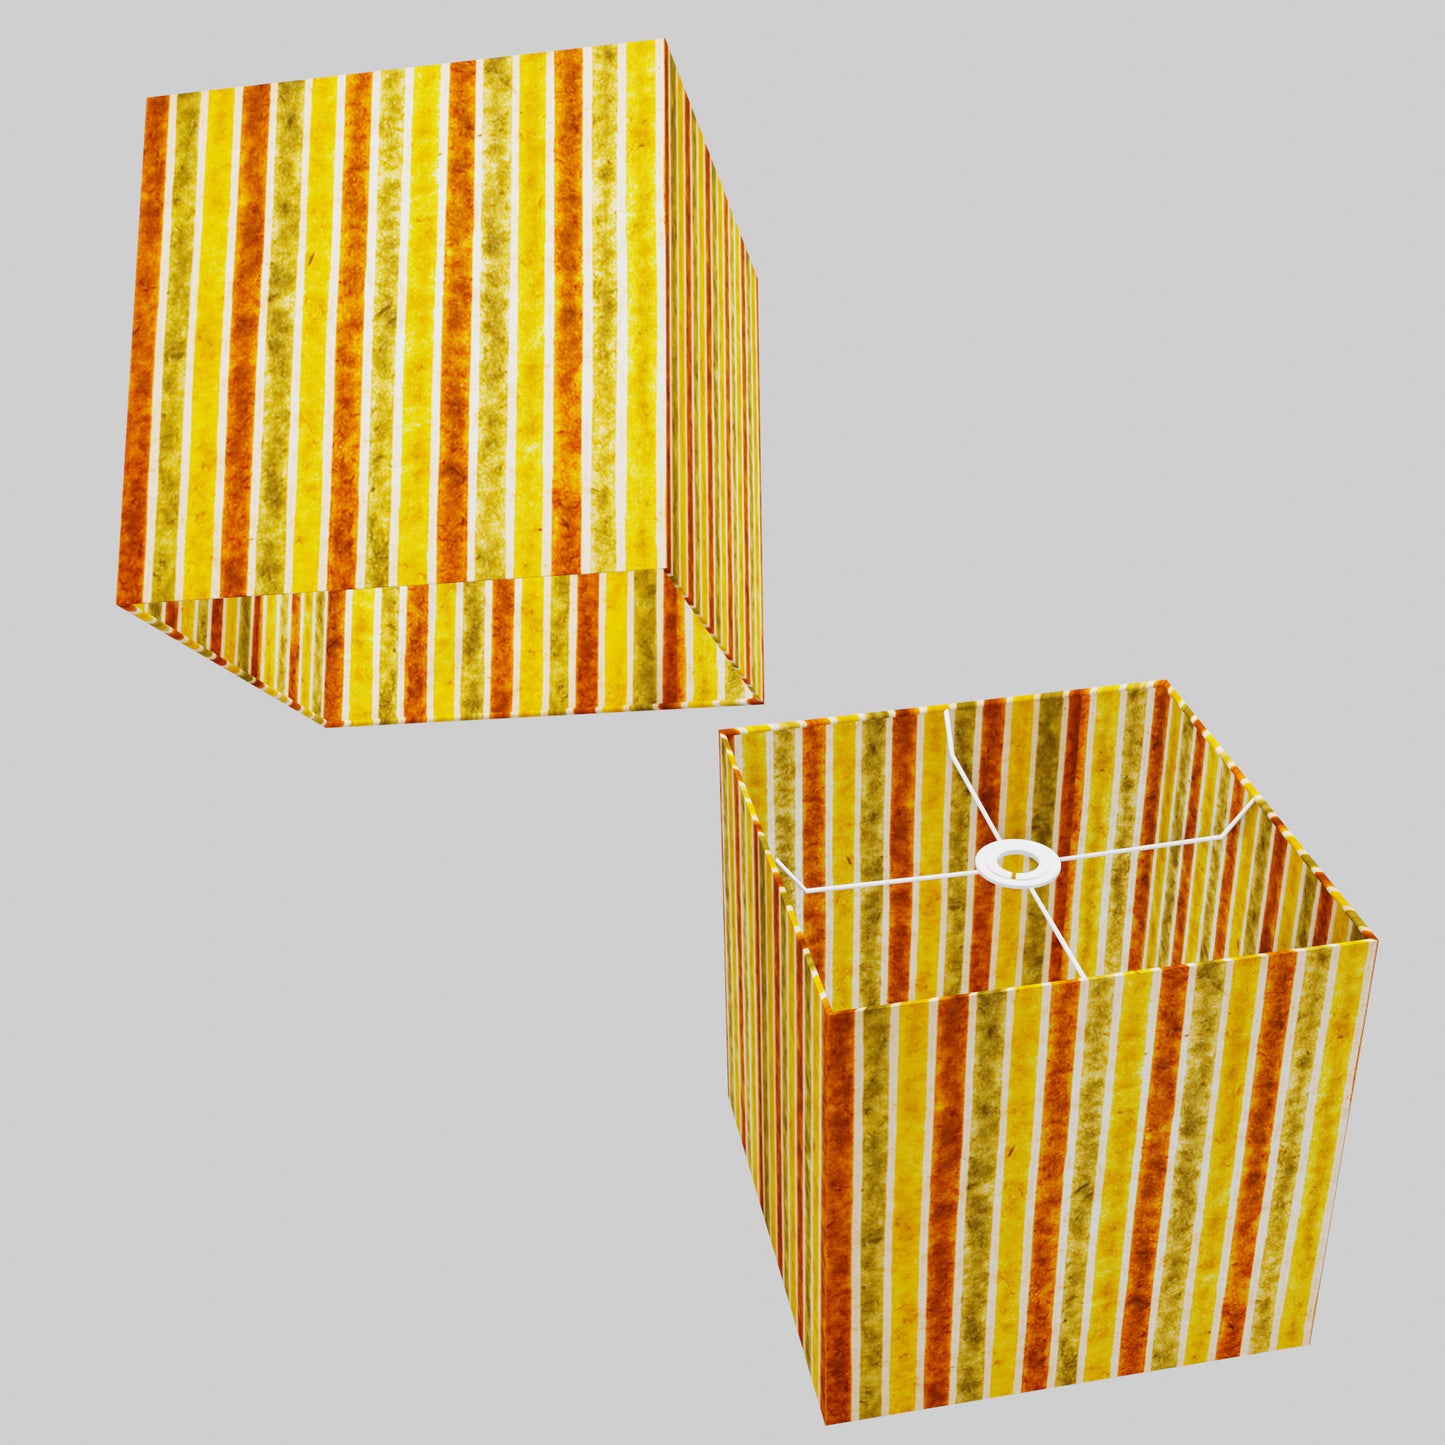 Square Lamp Shade - P06 - Batik Stripes Autumn, 30cm(w) x 30cm(h) x 30cm(d)